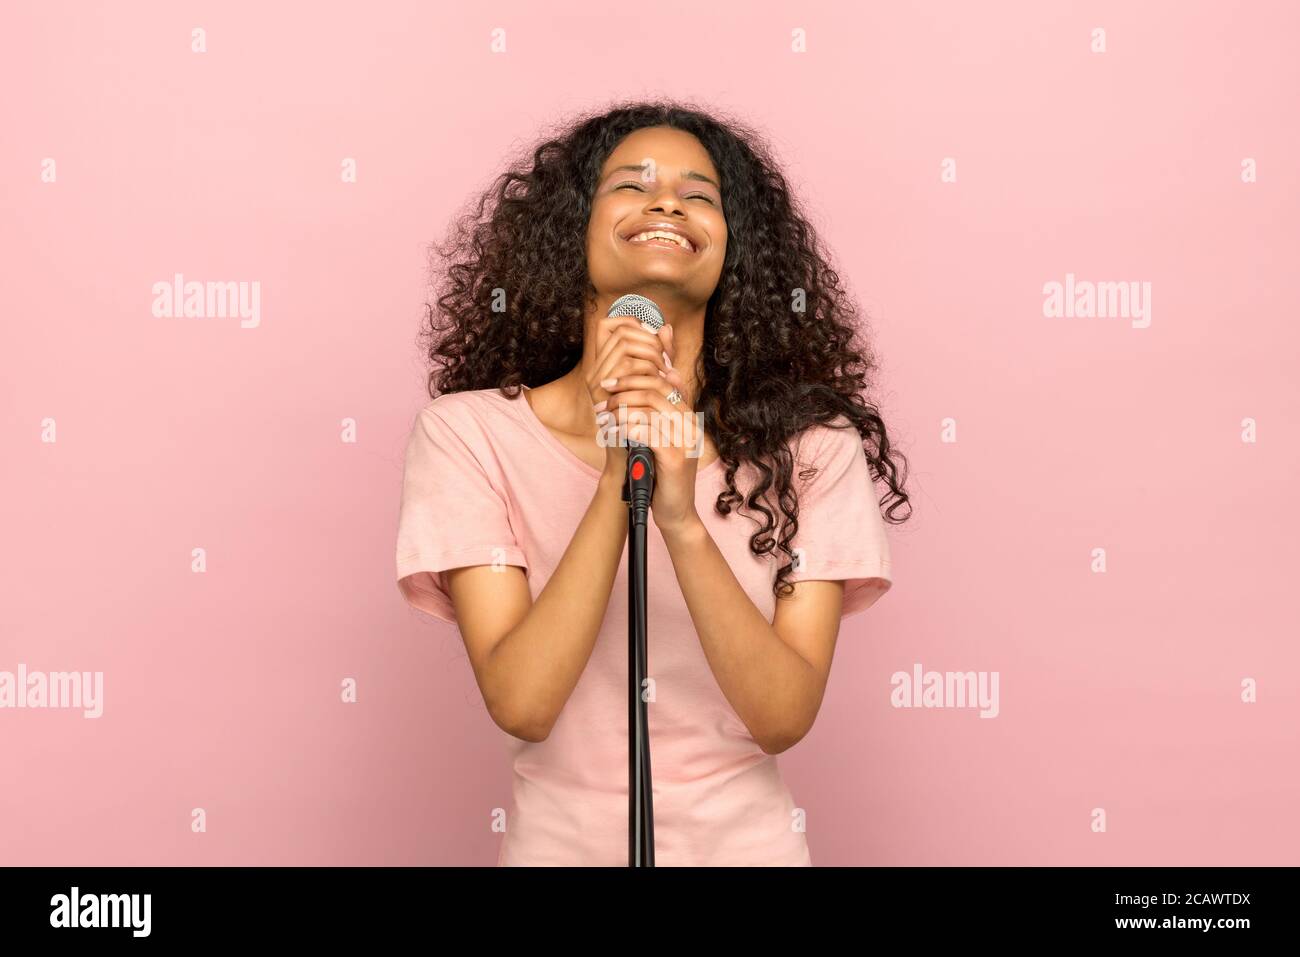 Lächelnd glücklich junge schwarze Mädchen singen in ein Mikrofon mit Kopf nach hinten gekippt und strahlendes Lächeln gegen ein rosa Studio Hintergrund Stockfoto